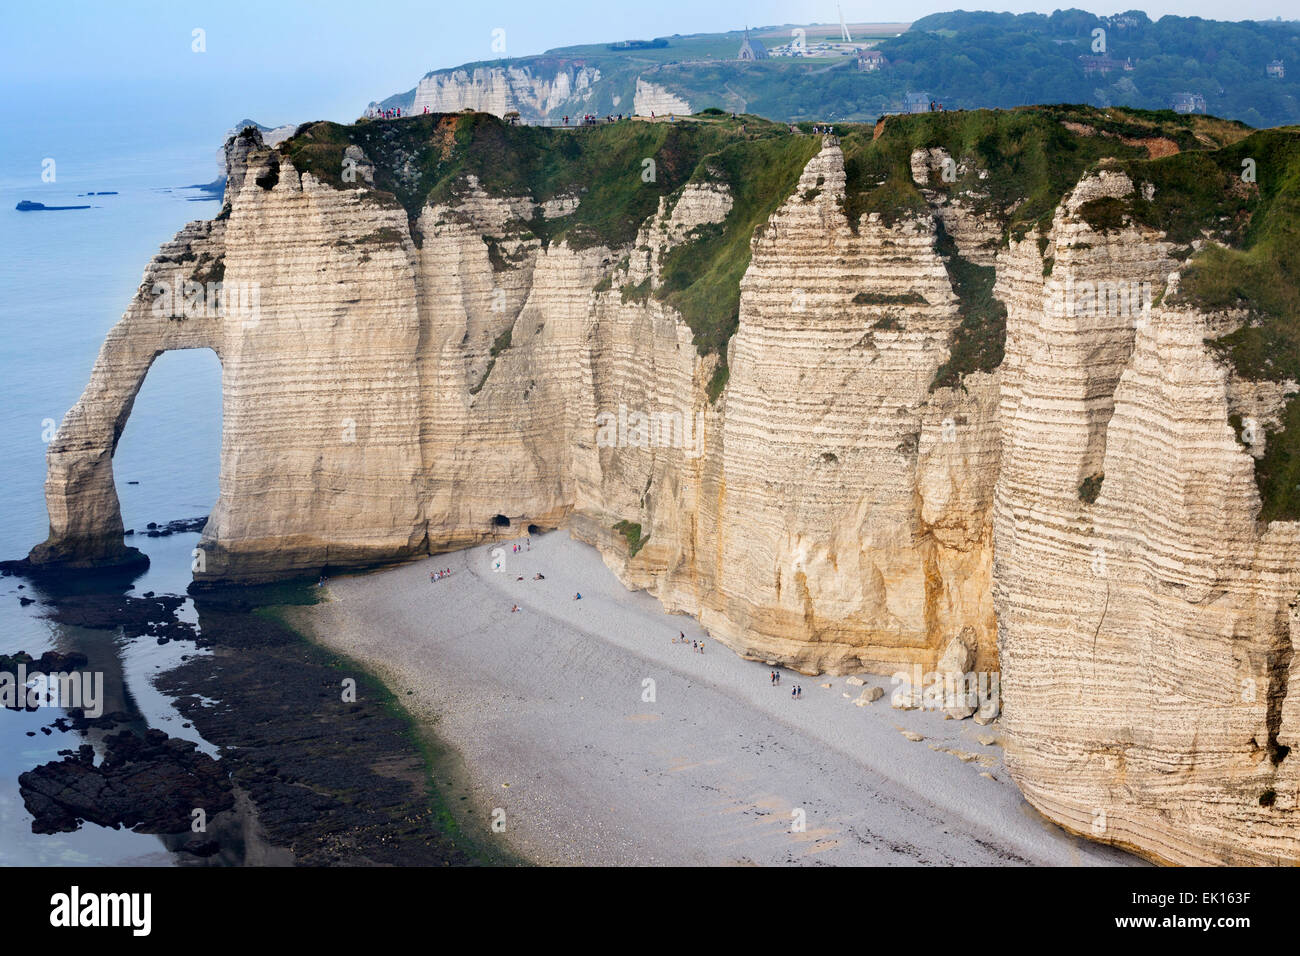 Falaise d'aval, sea cliff, Étretat, Côte d'Albatre, Haute-Normandie, Normandy, France, Europe Stock Photo